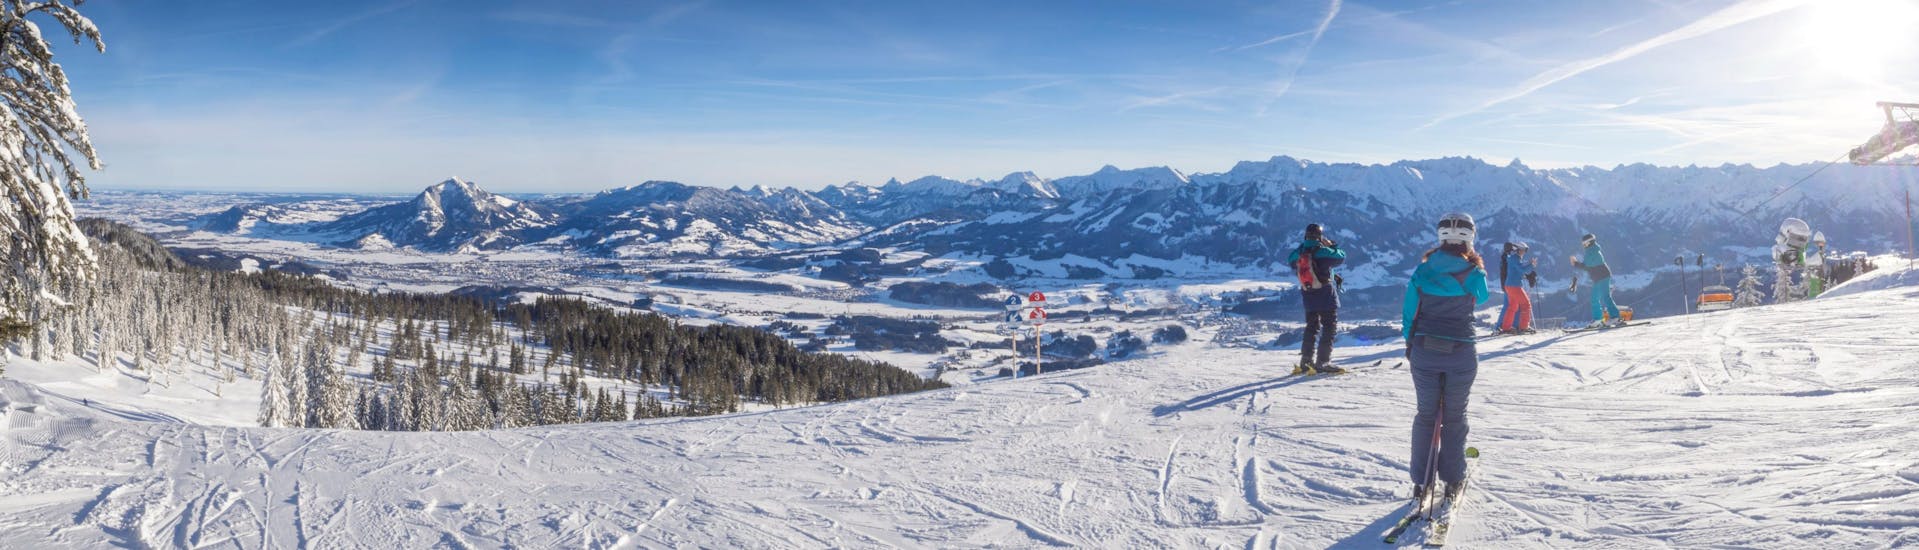 Panoramablick auf die Pisten von Bolsterlang in Bayern, wo die örtlichen Skischulen ihre Skikurse anbieten.